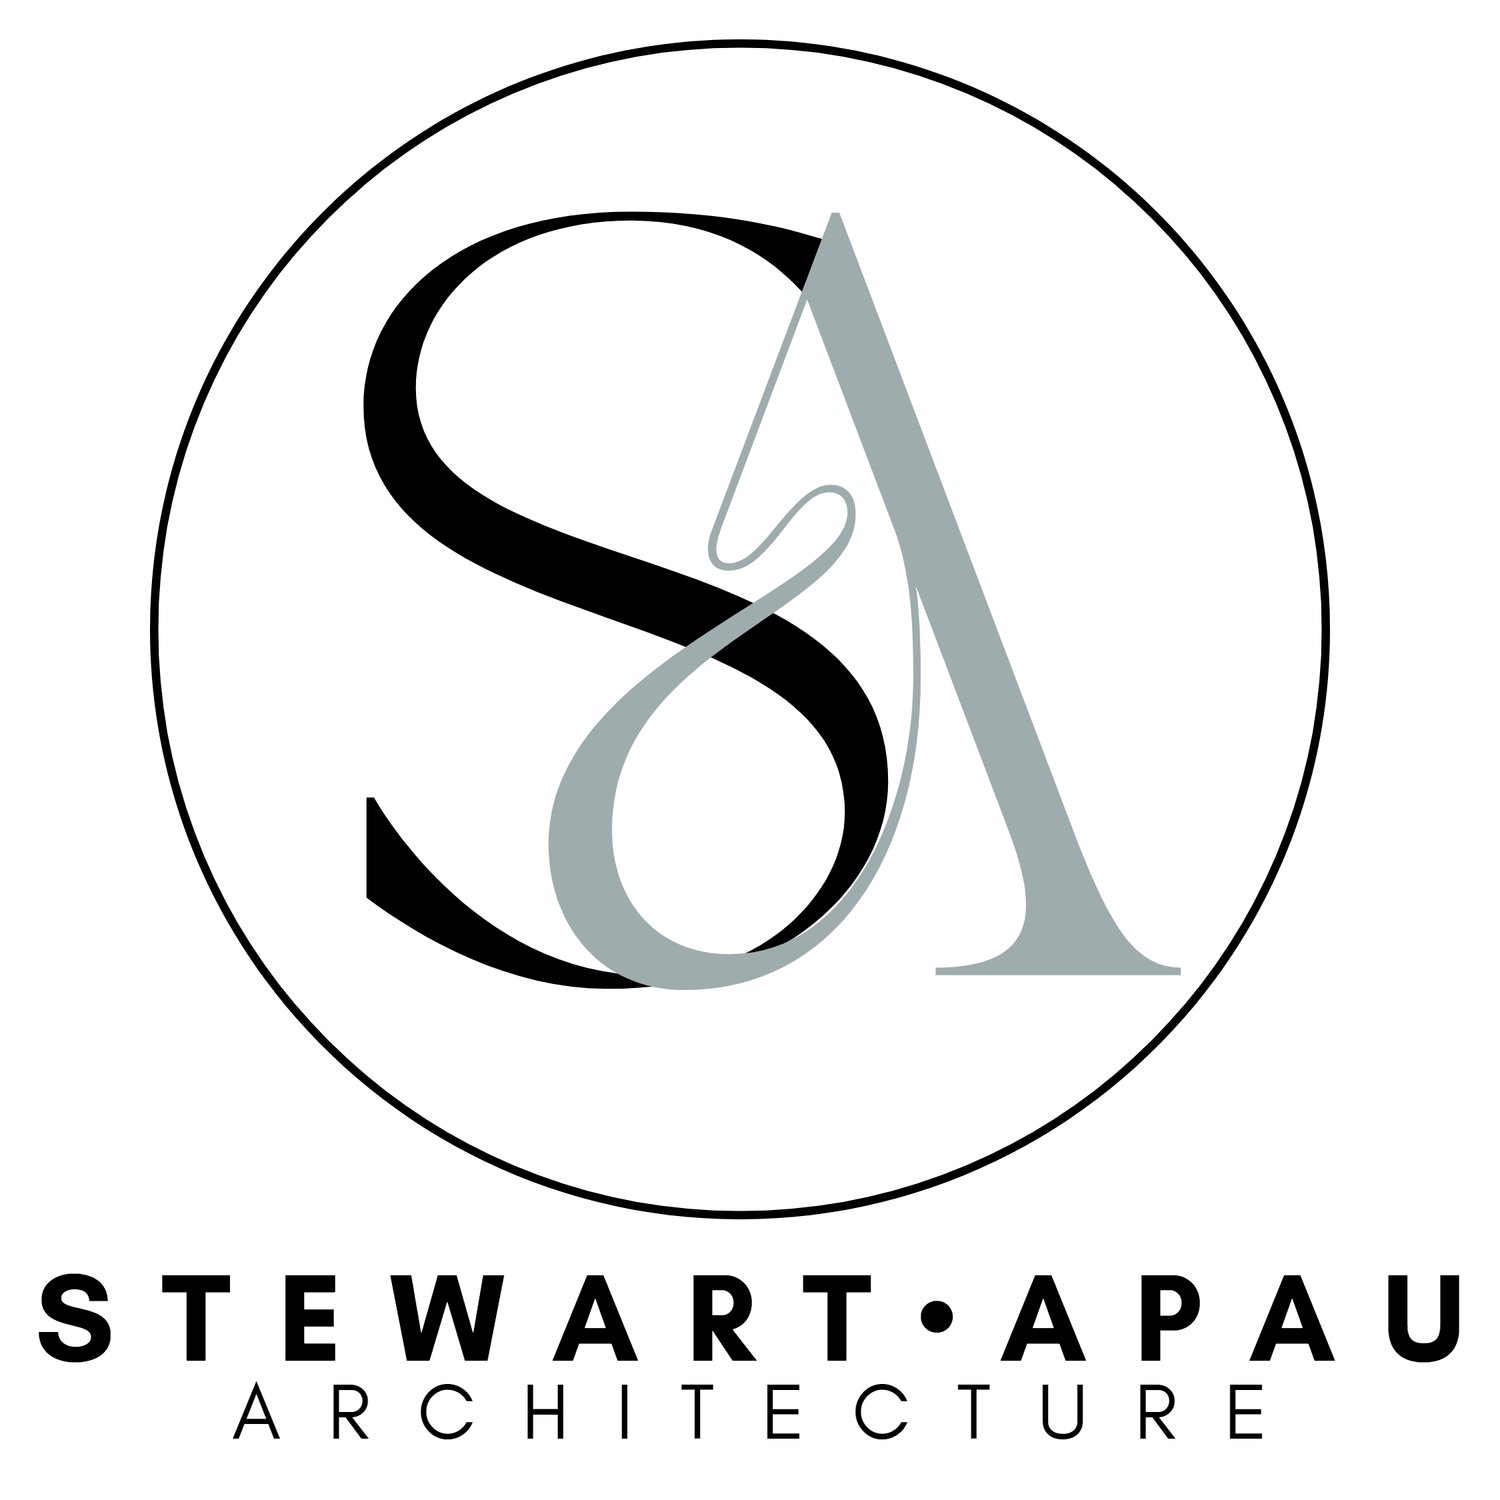 Stewart Apau